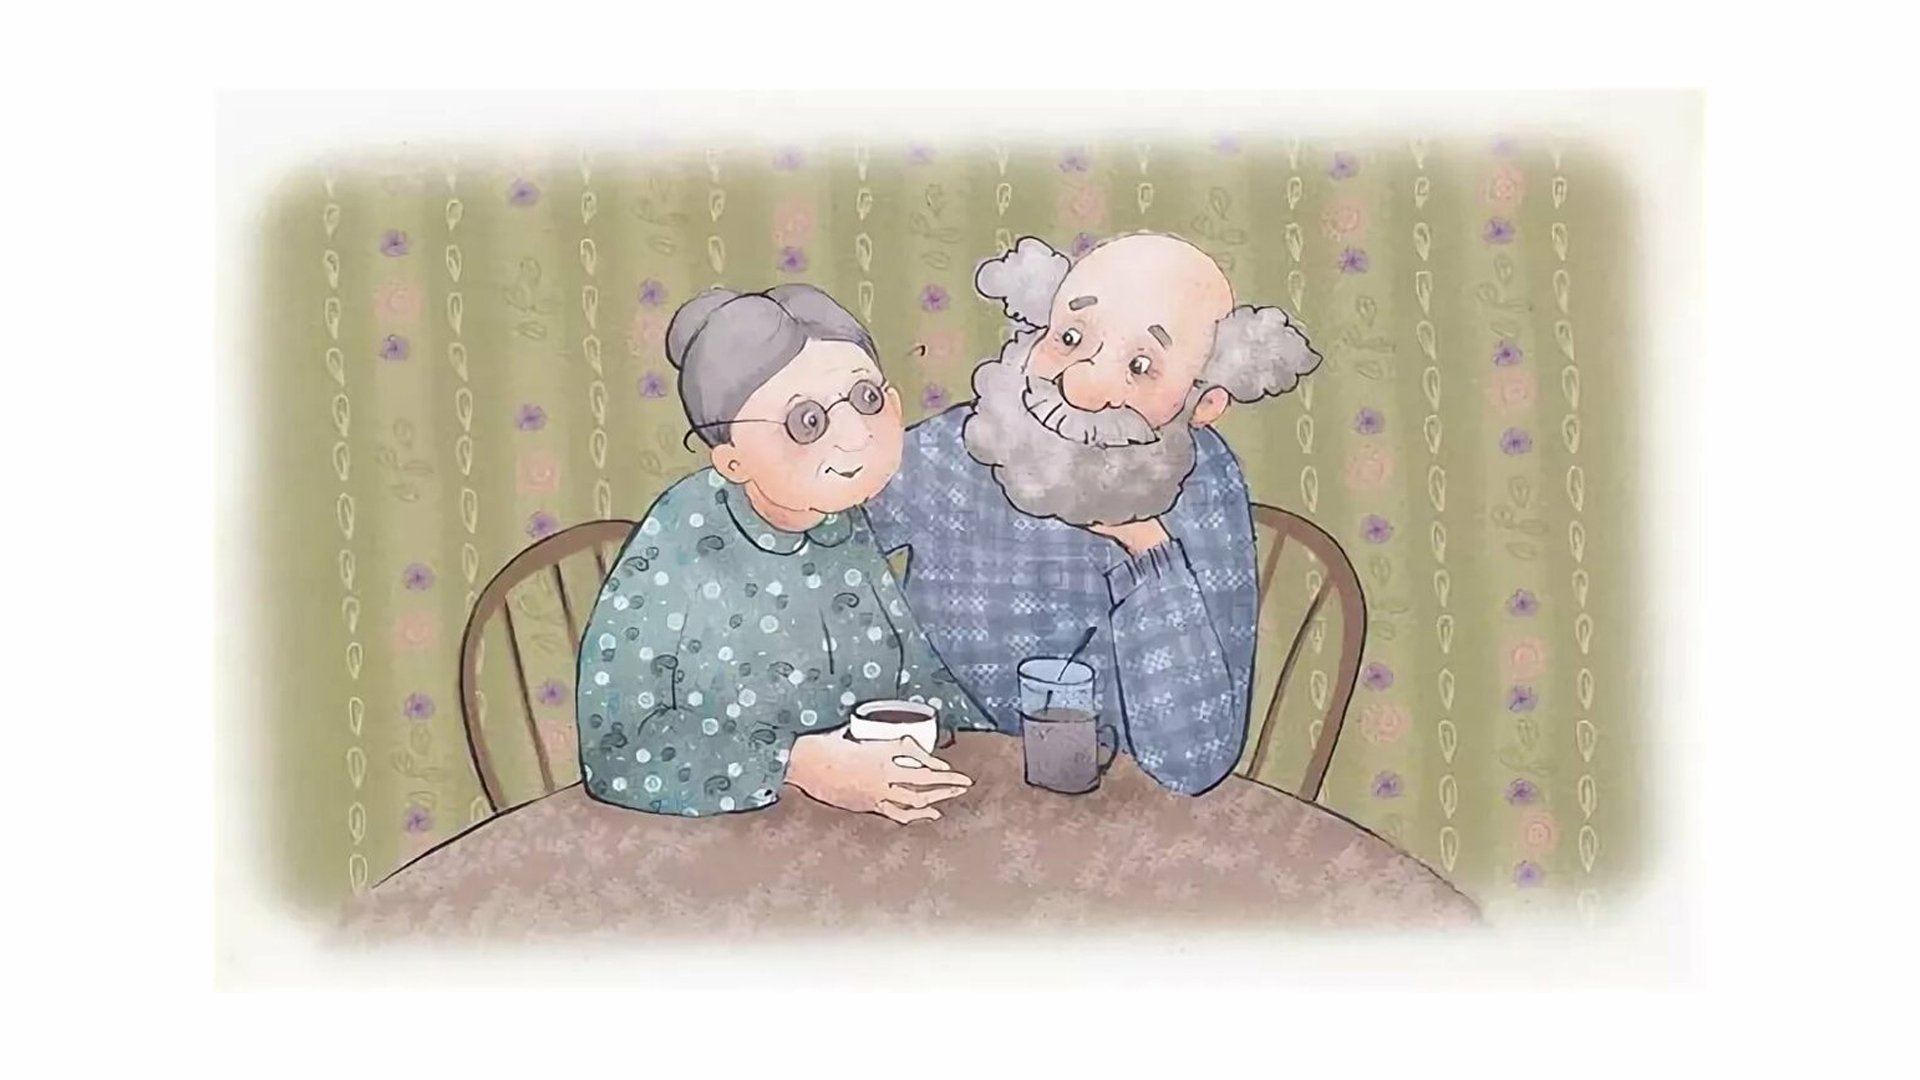 Картинка бабушка и дедушка. Бабушка и дедушка. Бабушка и дедушка иллюстрация. Изображение бабушки и дедушки. Бабушка и дедушка картинки.